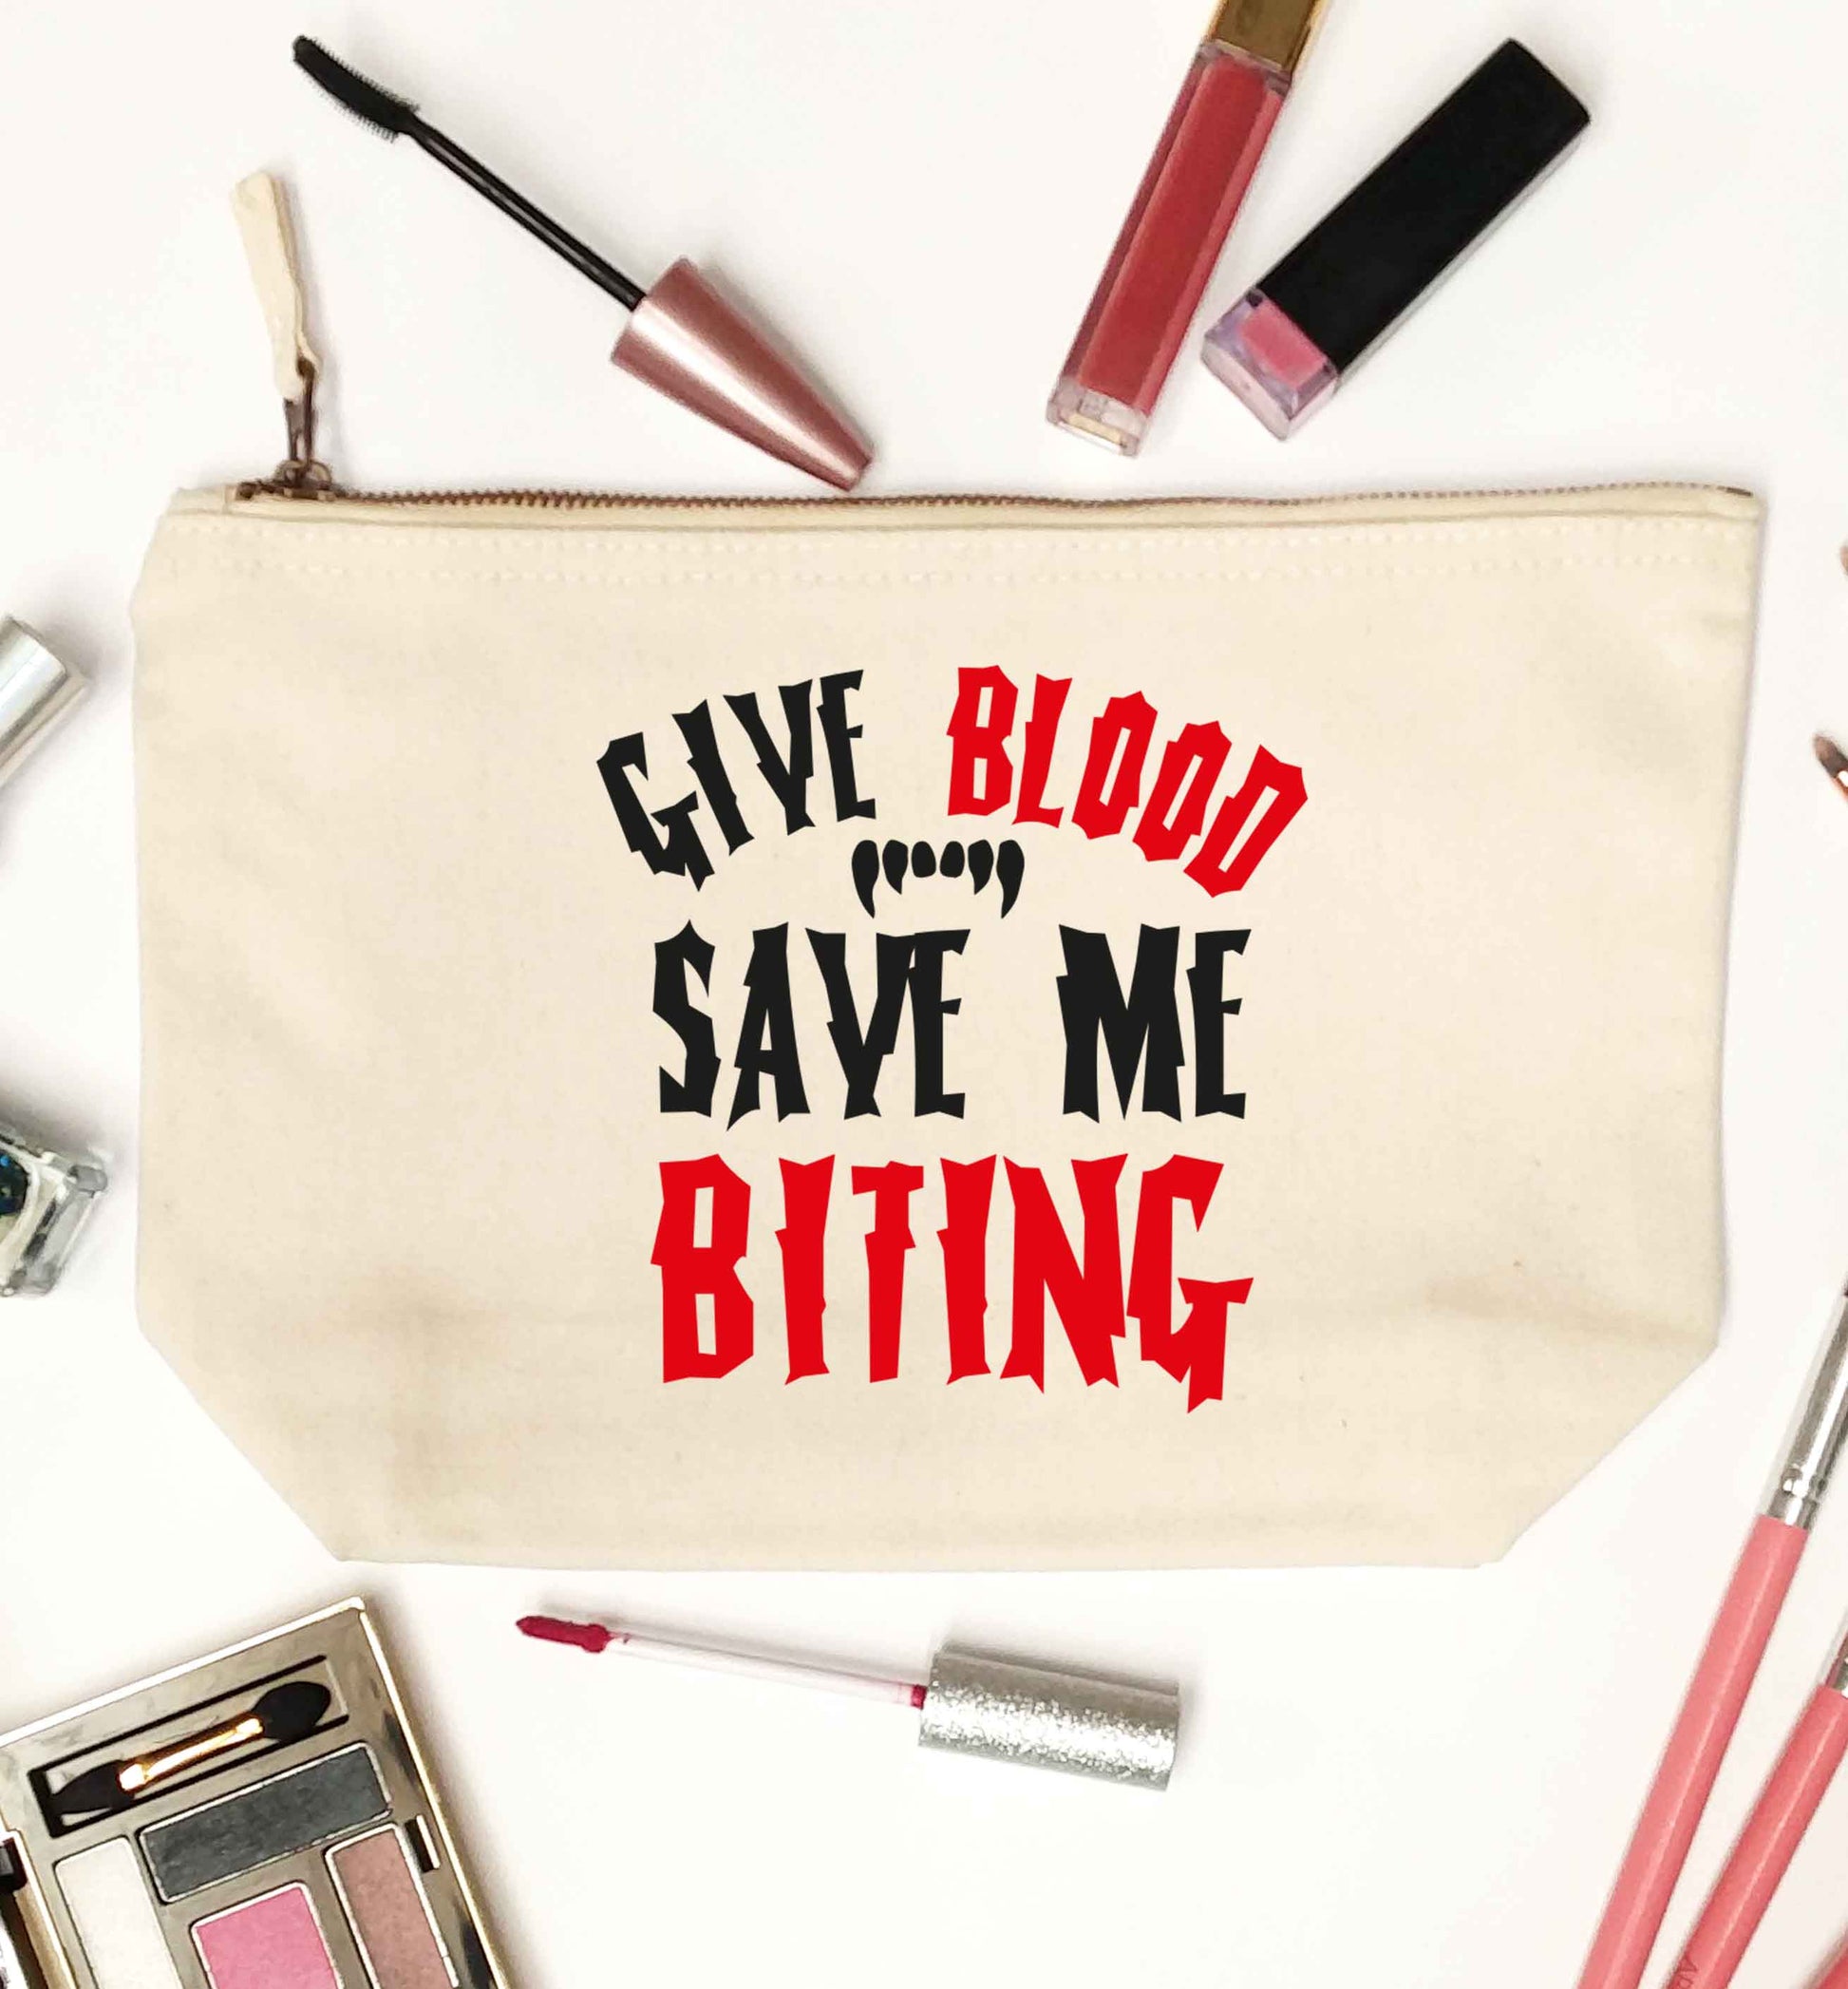 Give blood save me biting natural makeup bag